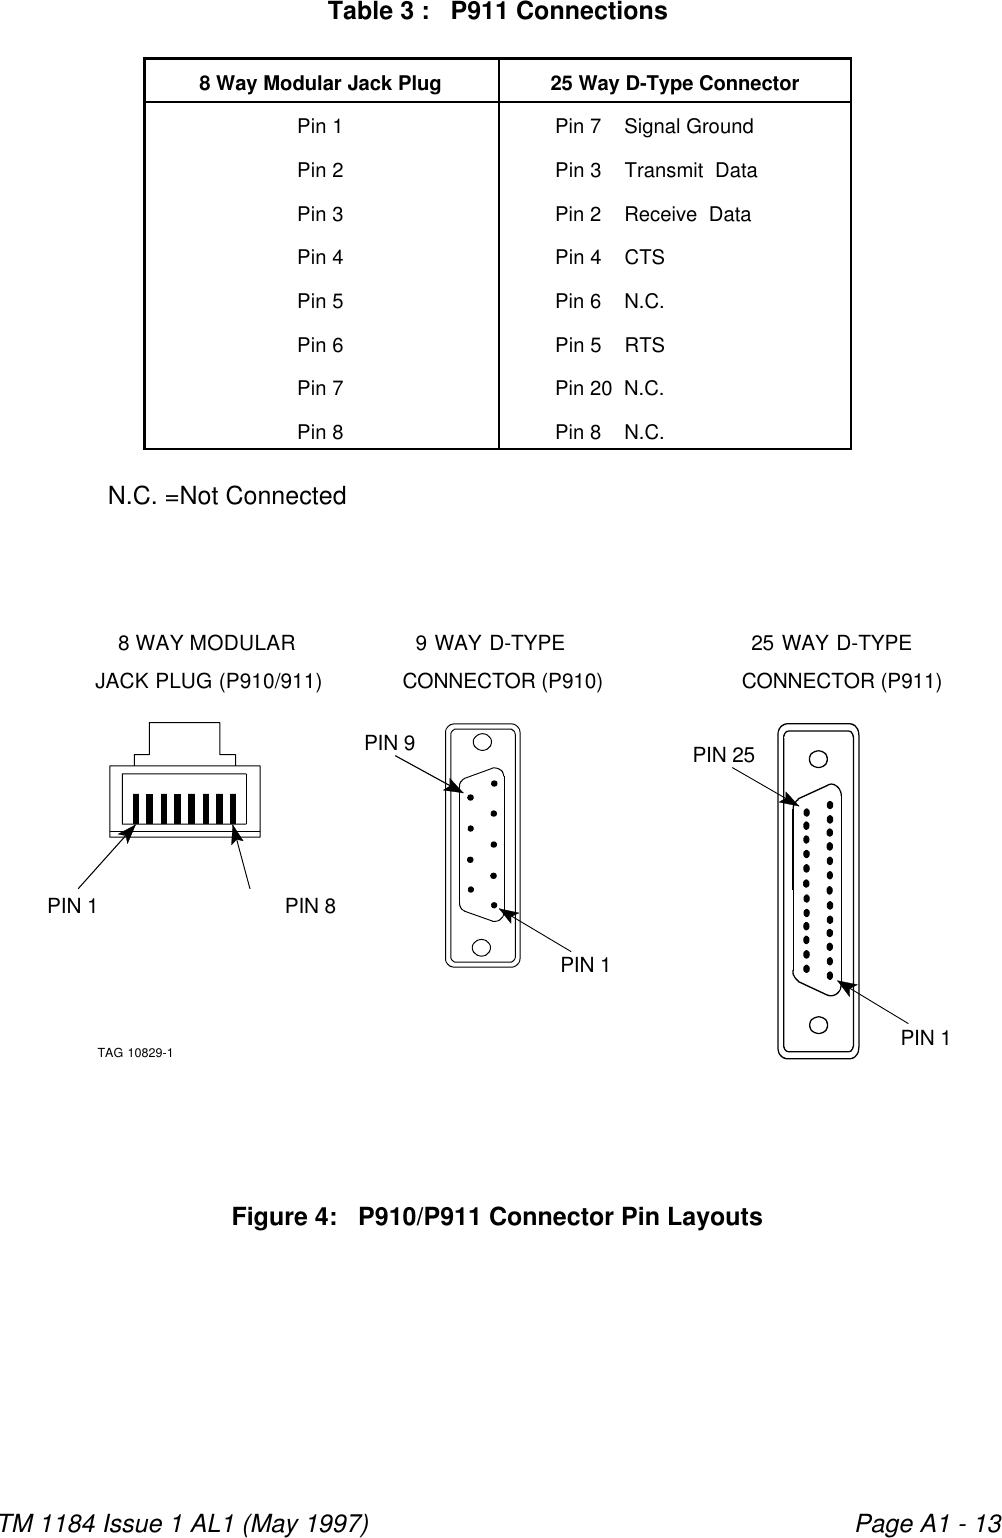 8 WAY MODULARJACK PLUG (P910/911)PIN 1 PIN 8TAG 10829-1PIN 25PIN 125 WAY D-TYPECONNECTOR (P911)PIN 19 WAY D-TYPECONNECTOR (P910)PIN 9TM 1184 Issue 1 AL1 (May 1997) Page A1 - 13Figure 4:   P910/P911 Connector Pin LayoutsTable 3 :   P911 Connections8 Way Modular Jack Plug 25 Way D-Type ConnectorPin 1           Pin 7    Signal Ground Pin 2           Pin 3    Transmit  Data  Pin 3           Pin 2    Receive  Data Pin 4           Pin 4    CTS              Pin 5           Pin 6    N.C.             Pin 6           Pin 5    RTS              Pin 7           Pin 20  N.C.              Pin 8           Pin 8    N.C.    N.C. =Not Connected